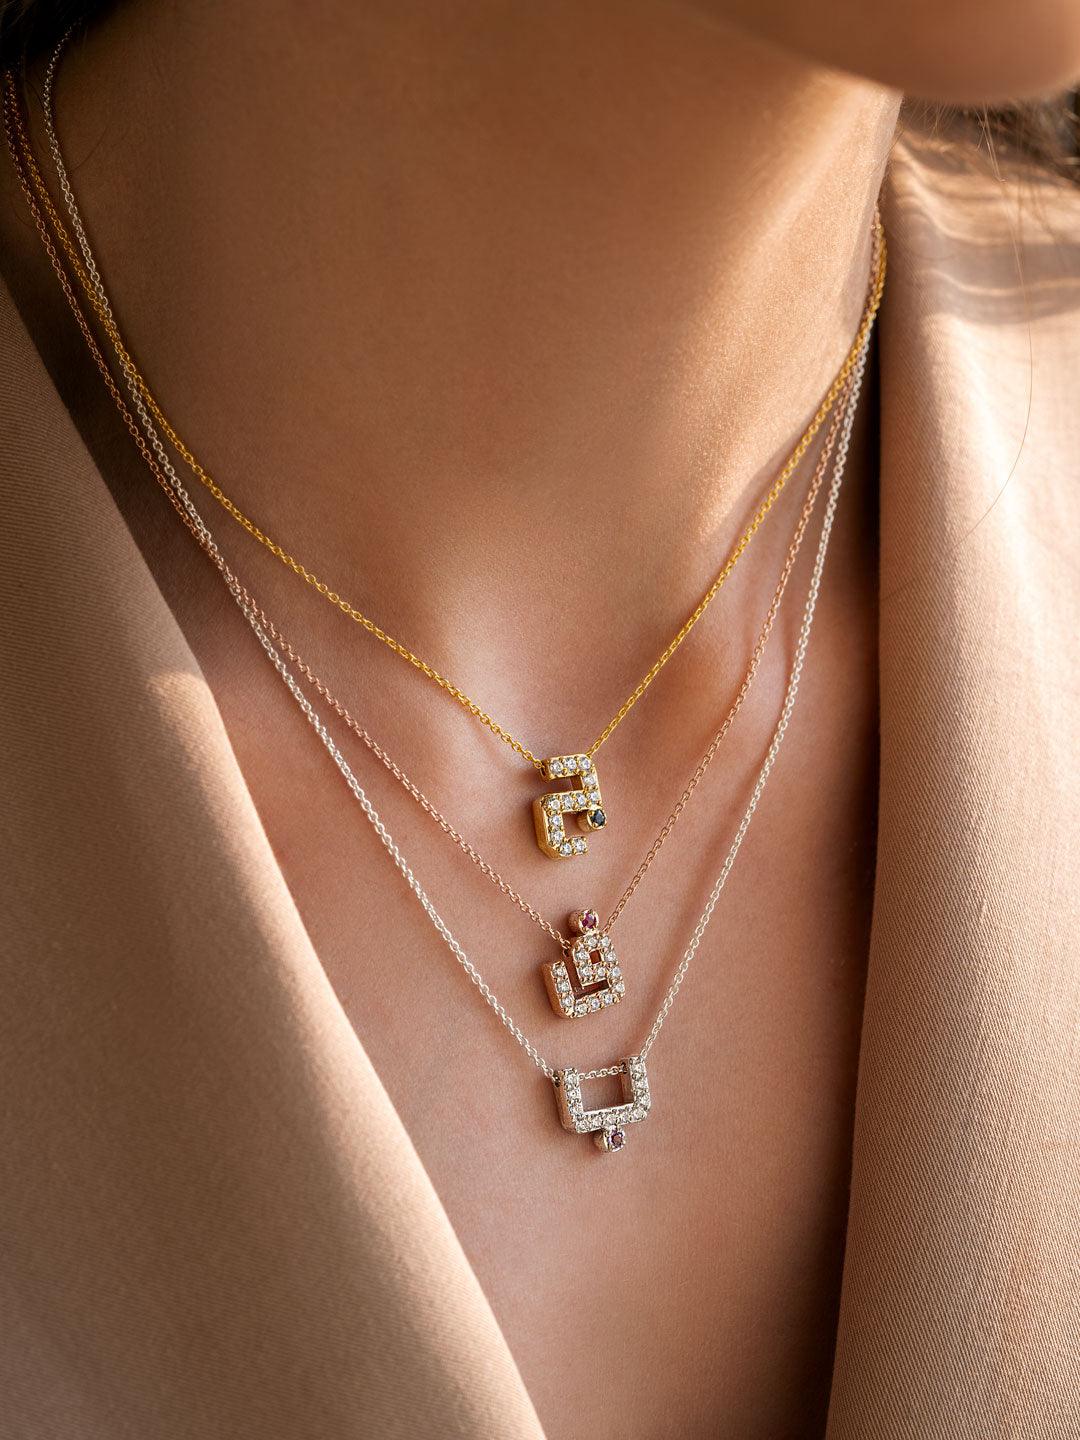 Arabic Letter Necklace – Sunna Designs